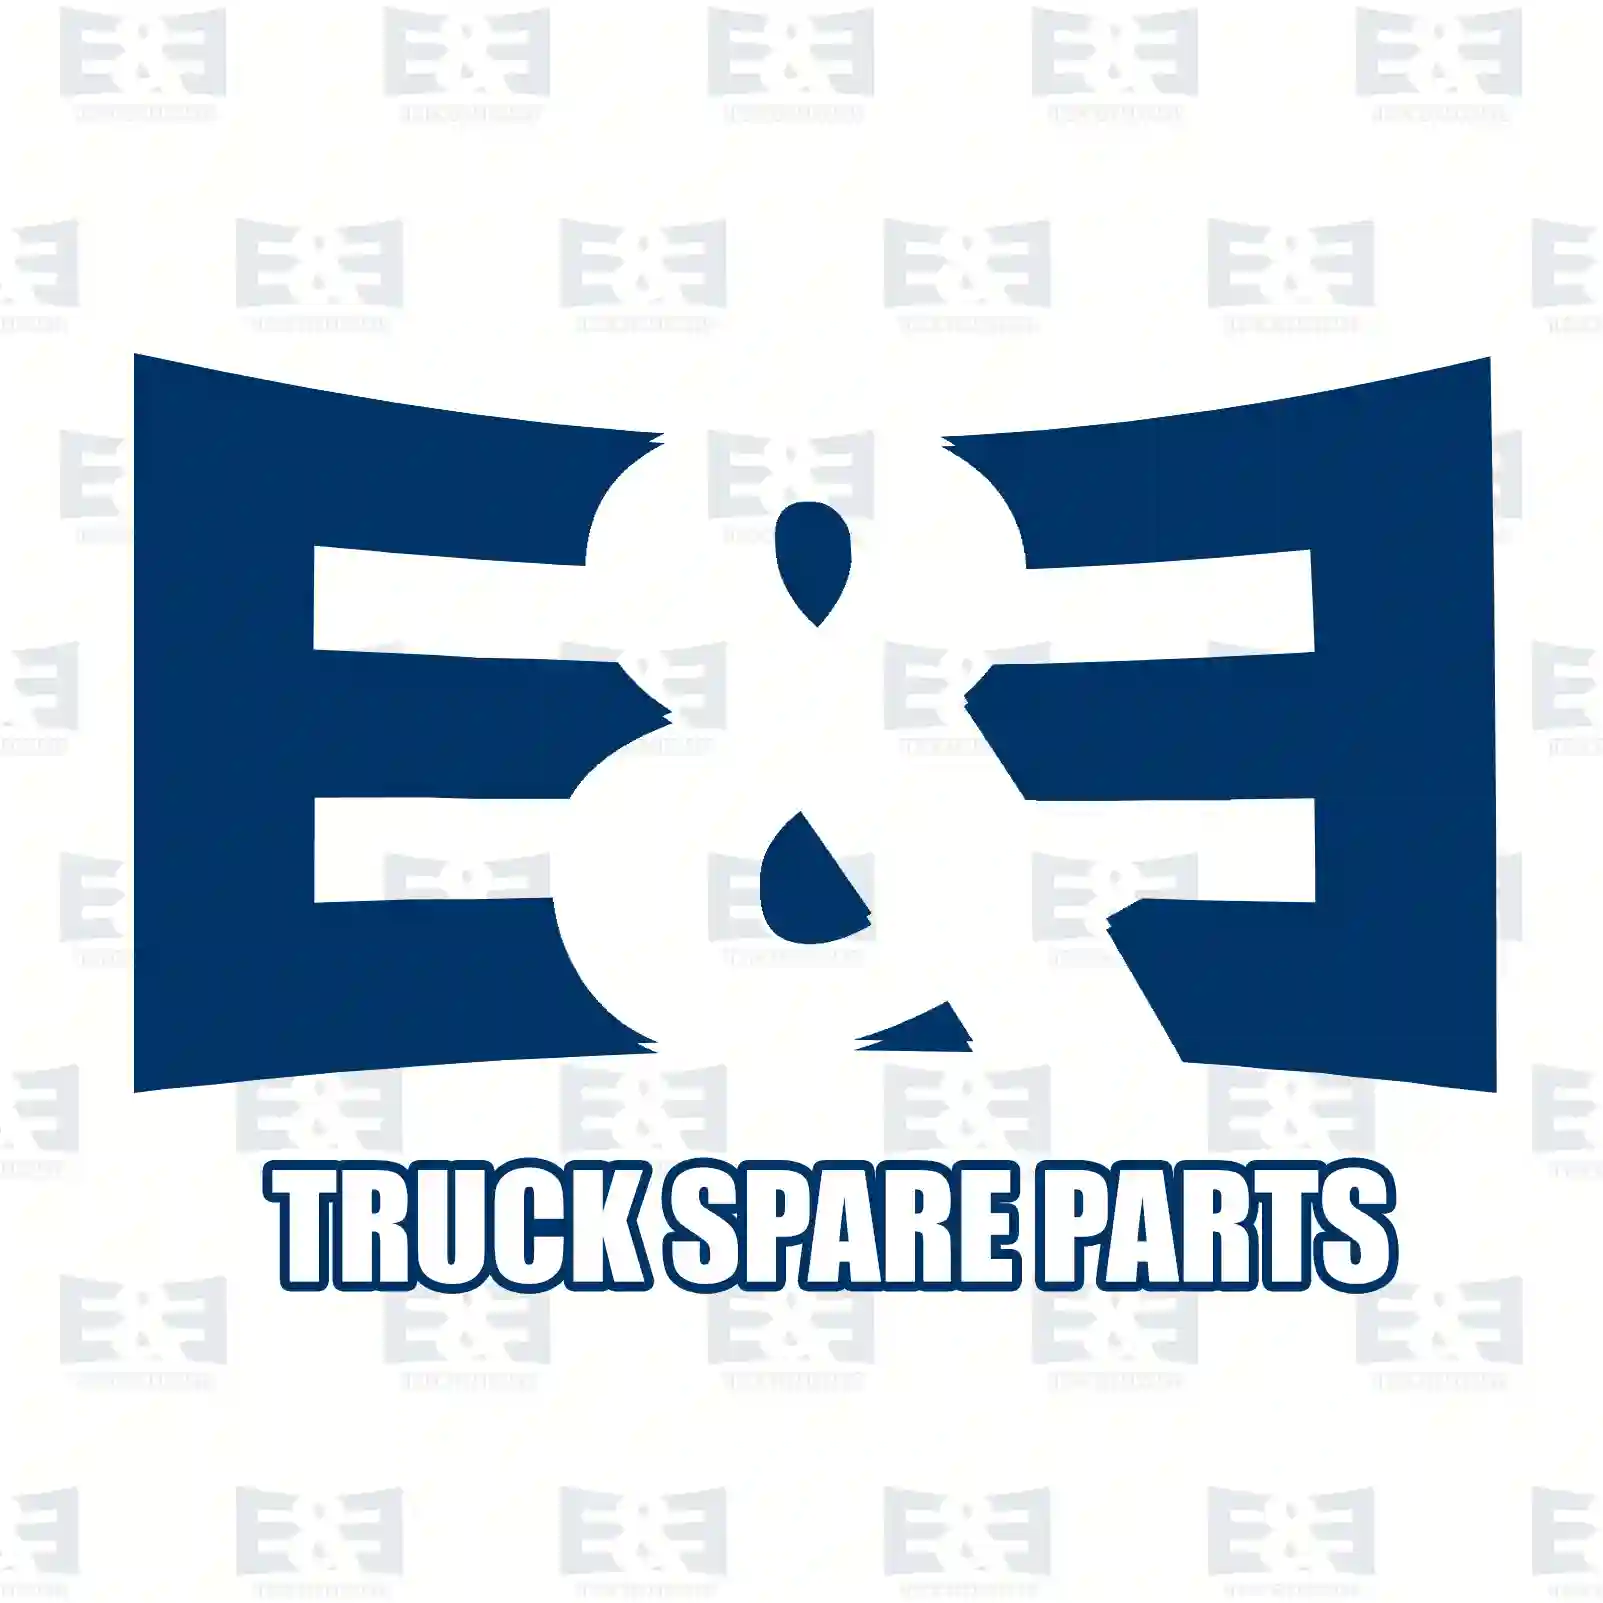 Fan Fan clutch, EE No 2E2203228 ,  oem no:0002003023, 0002003223, 0002003323, 0002003522, 0002003523, 0002004222, 0002004722, 0002007022, 0002007122, 0002007422, 0002008122, 0002008222 E&E Truck Spare Parts | Truck Spare Parts, Auotomotive Spare Parts